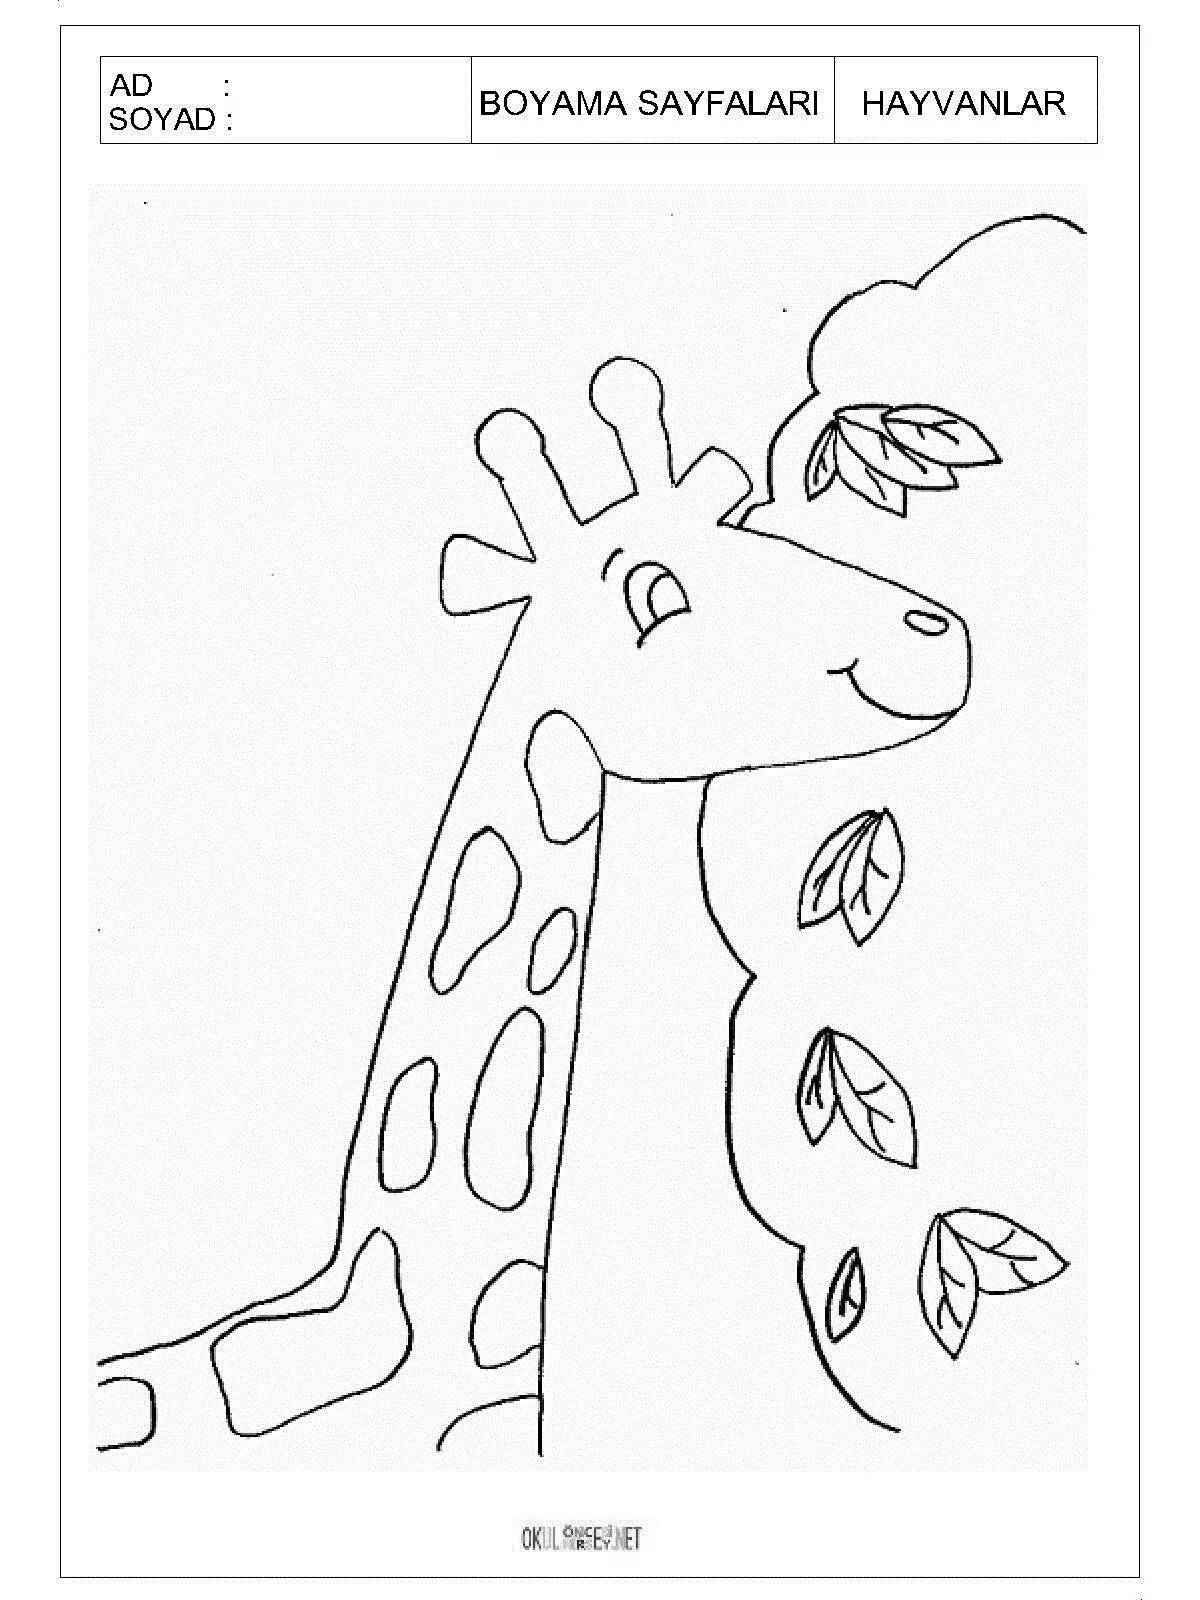 Exuberant giraffe drawing for kids